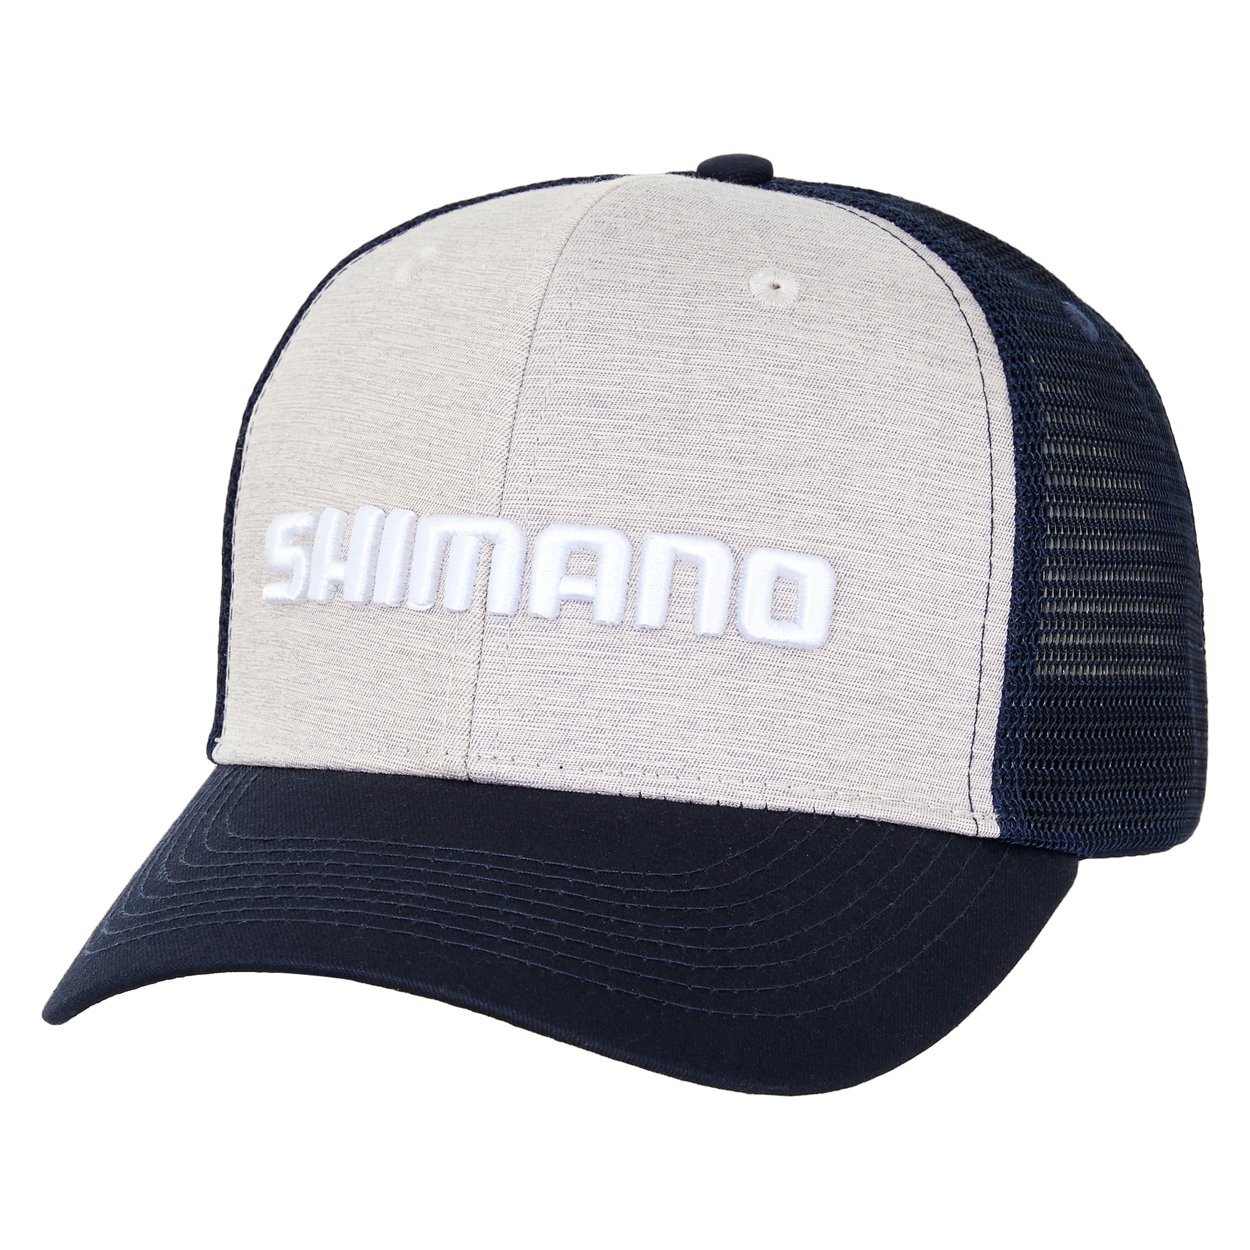 Shimano Coltsniper Trucker Hat @ Otto's TW